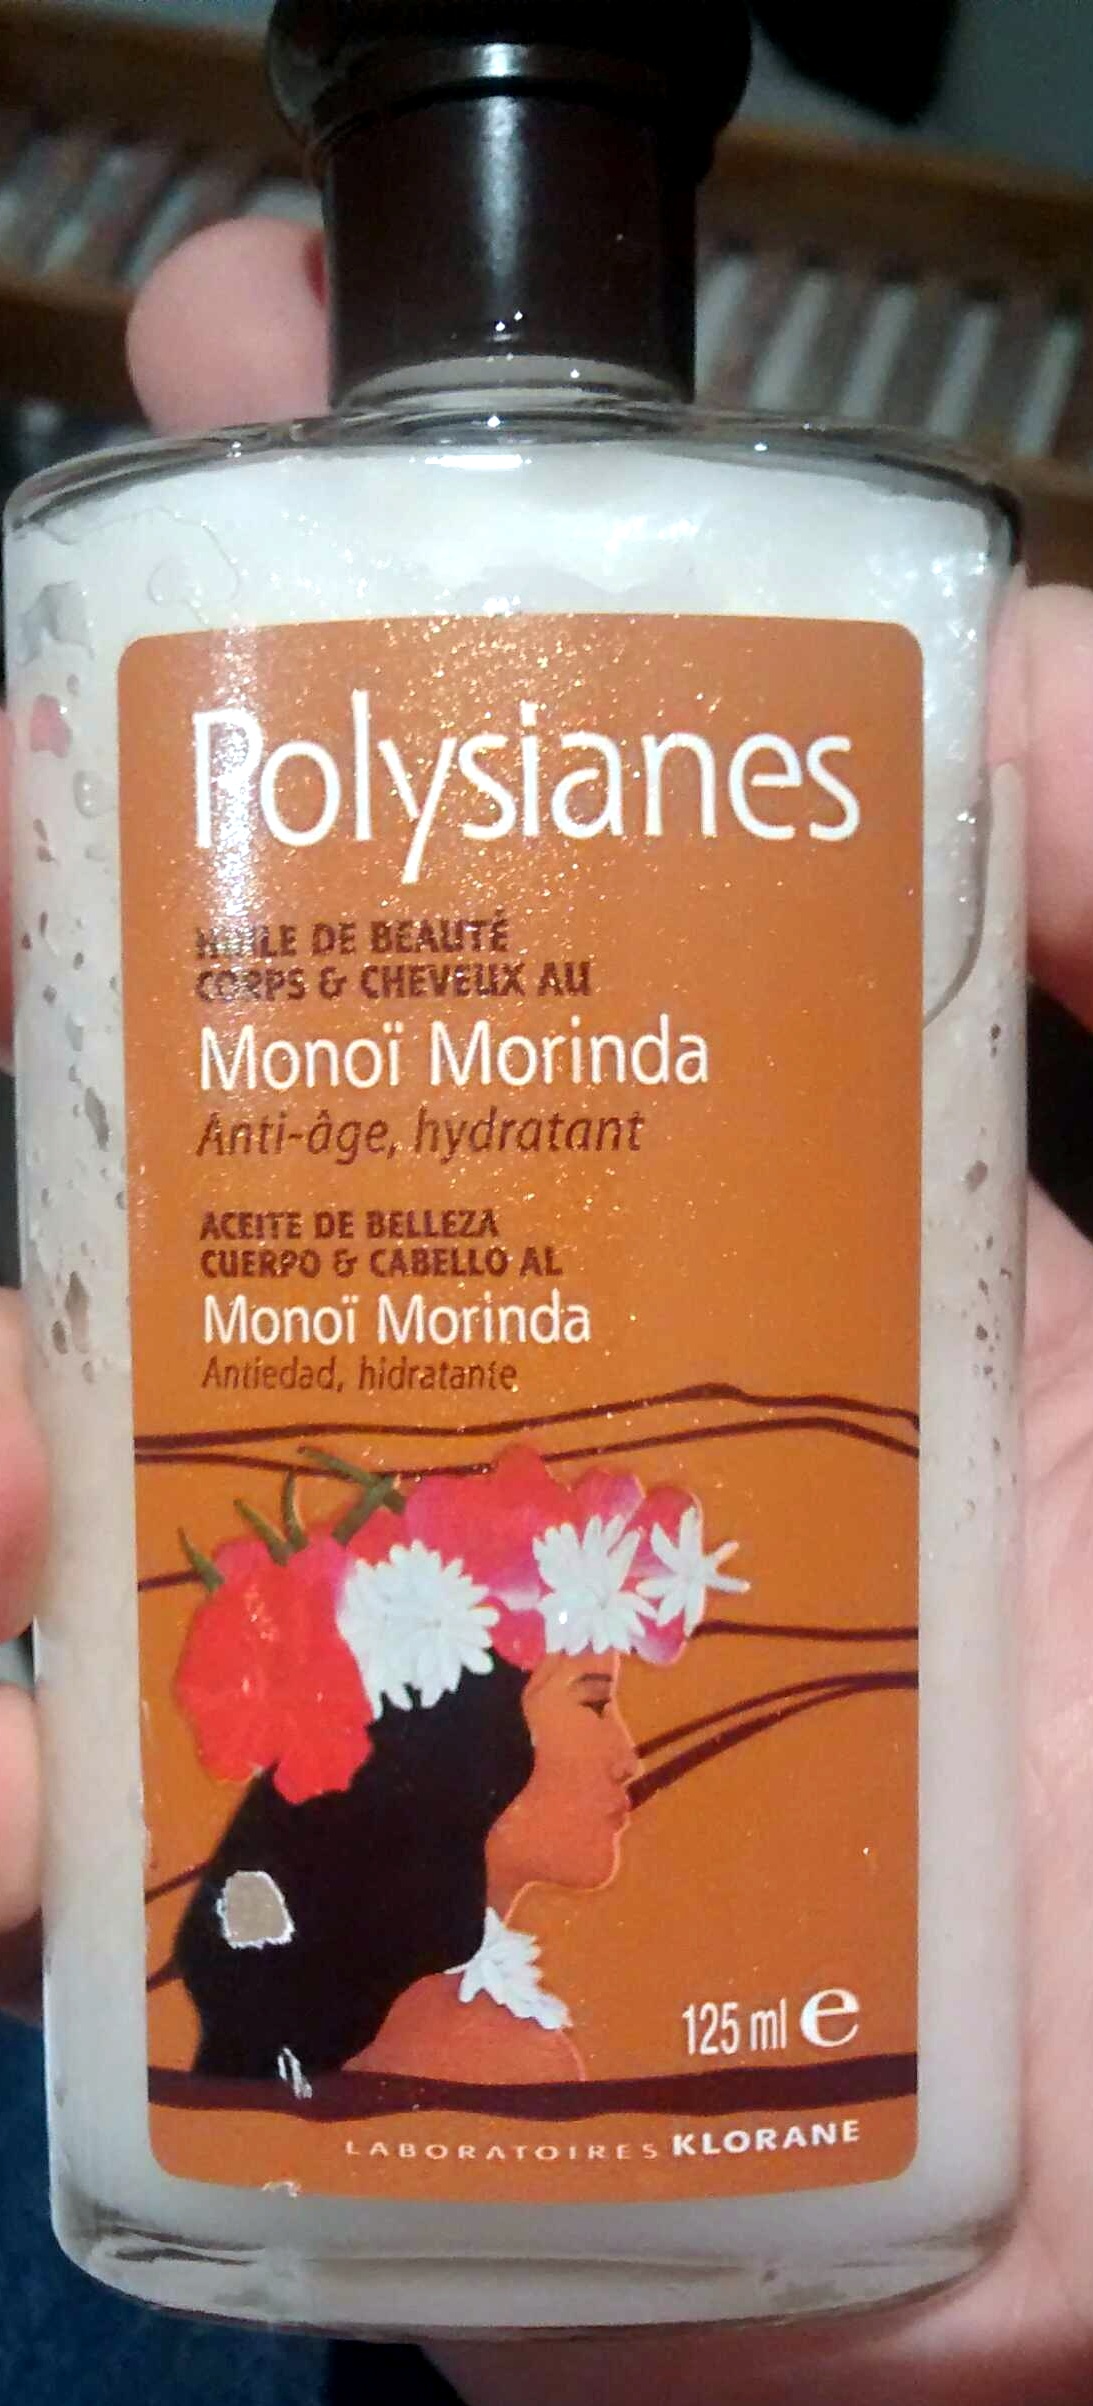 Polysianes Huile de beauté Monoi morinda - Product - fr